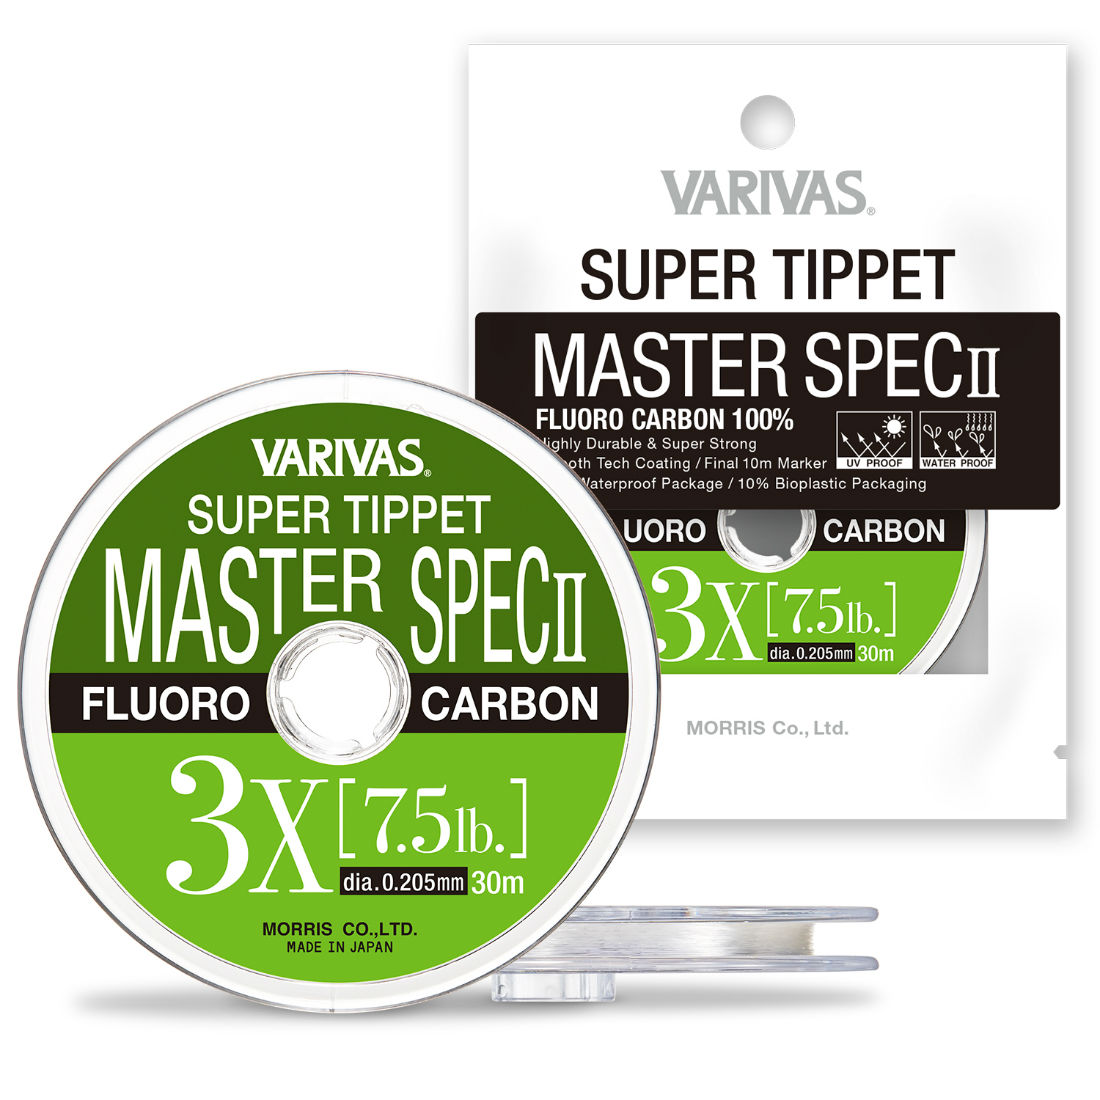 FIR SUPER TIPPET MASTER SPEC ll FLUORO 1X 30m 0.260mm 11.7lb